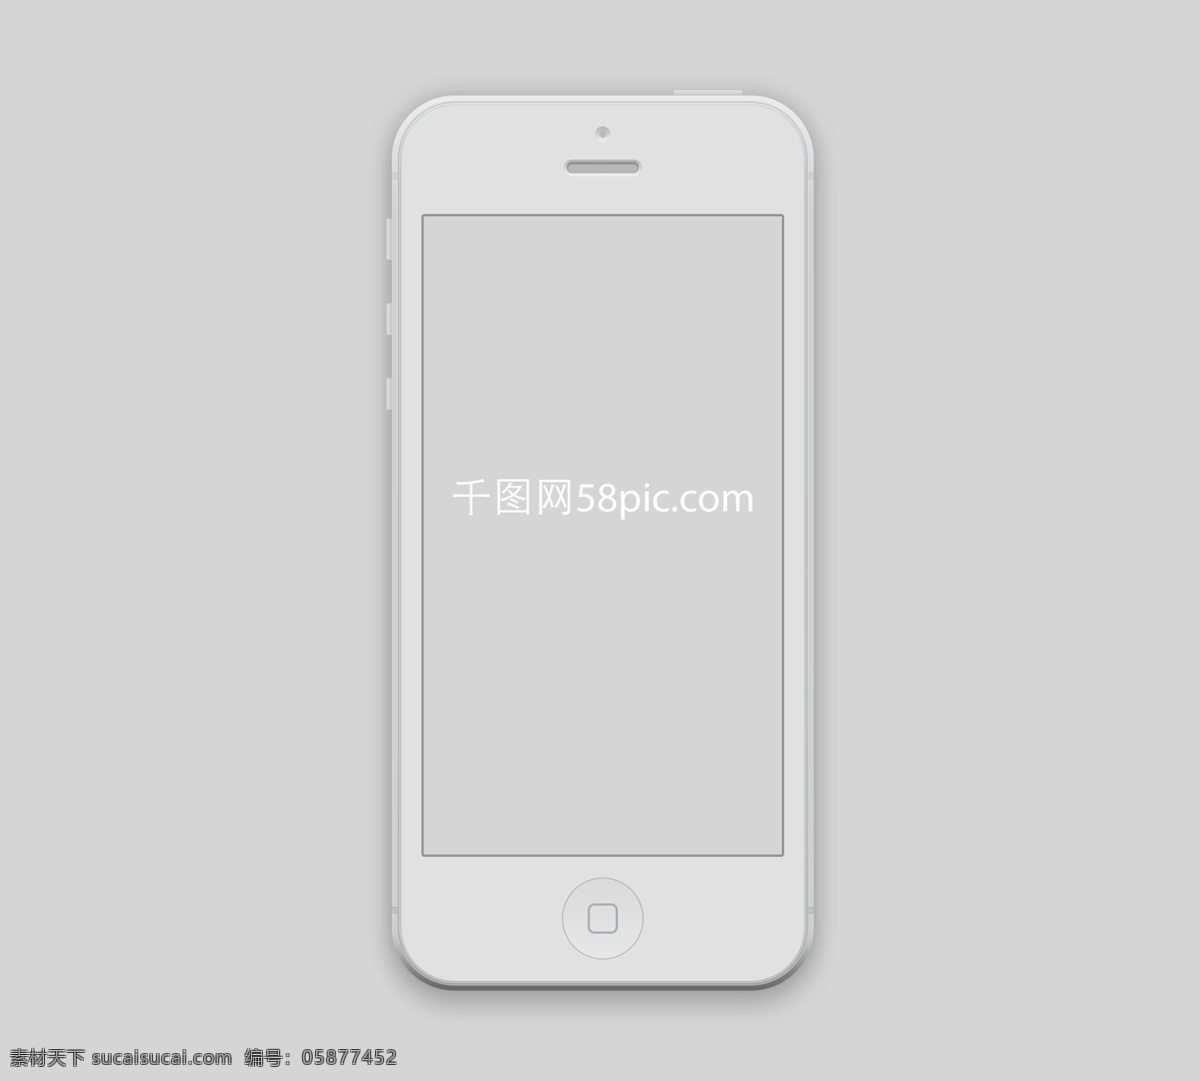 场景 中 苹果 iphone 手机 样机 模板 iphone5s 高清手机壁纸 ui页面展示 场景样机 mockup 模版 展示 appshowcase 样机模板 智能对象涂层